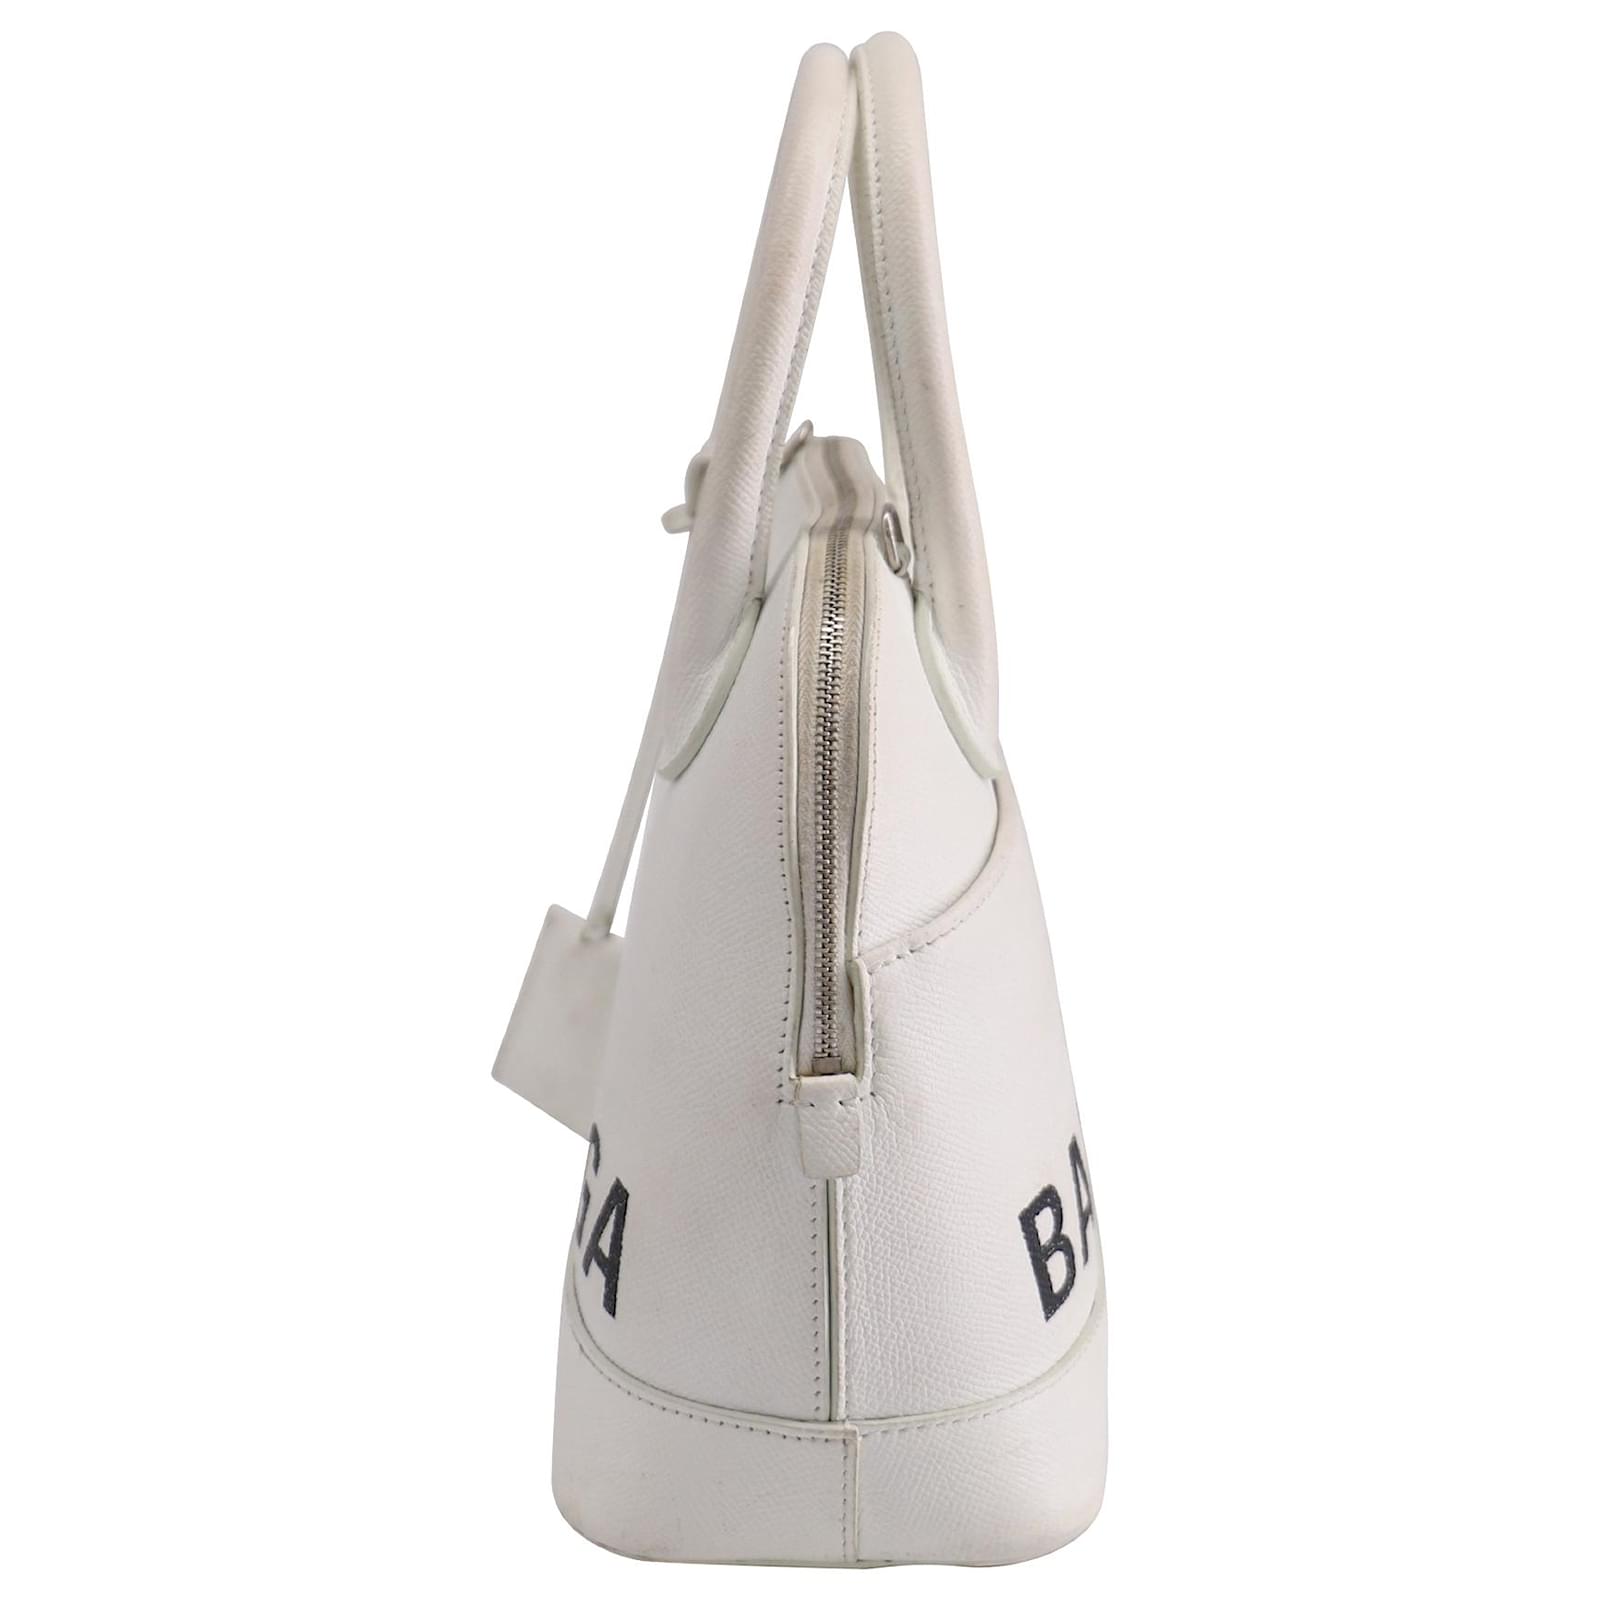 Balenciaga Luxury Handbag Ville Balenciaga Handbag In White